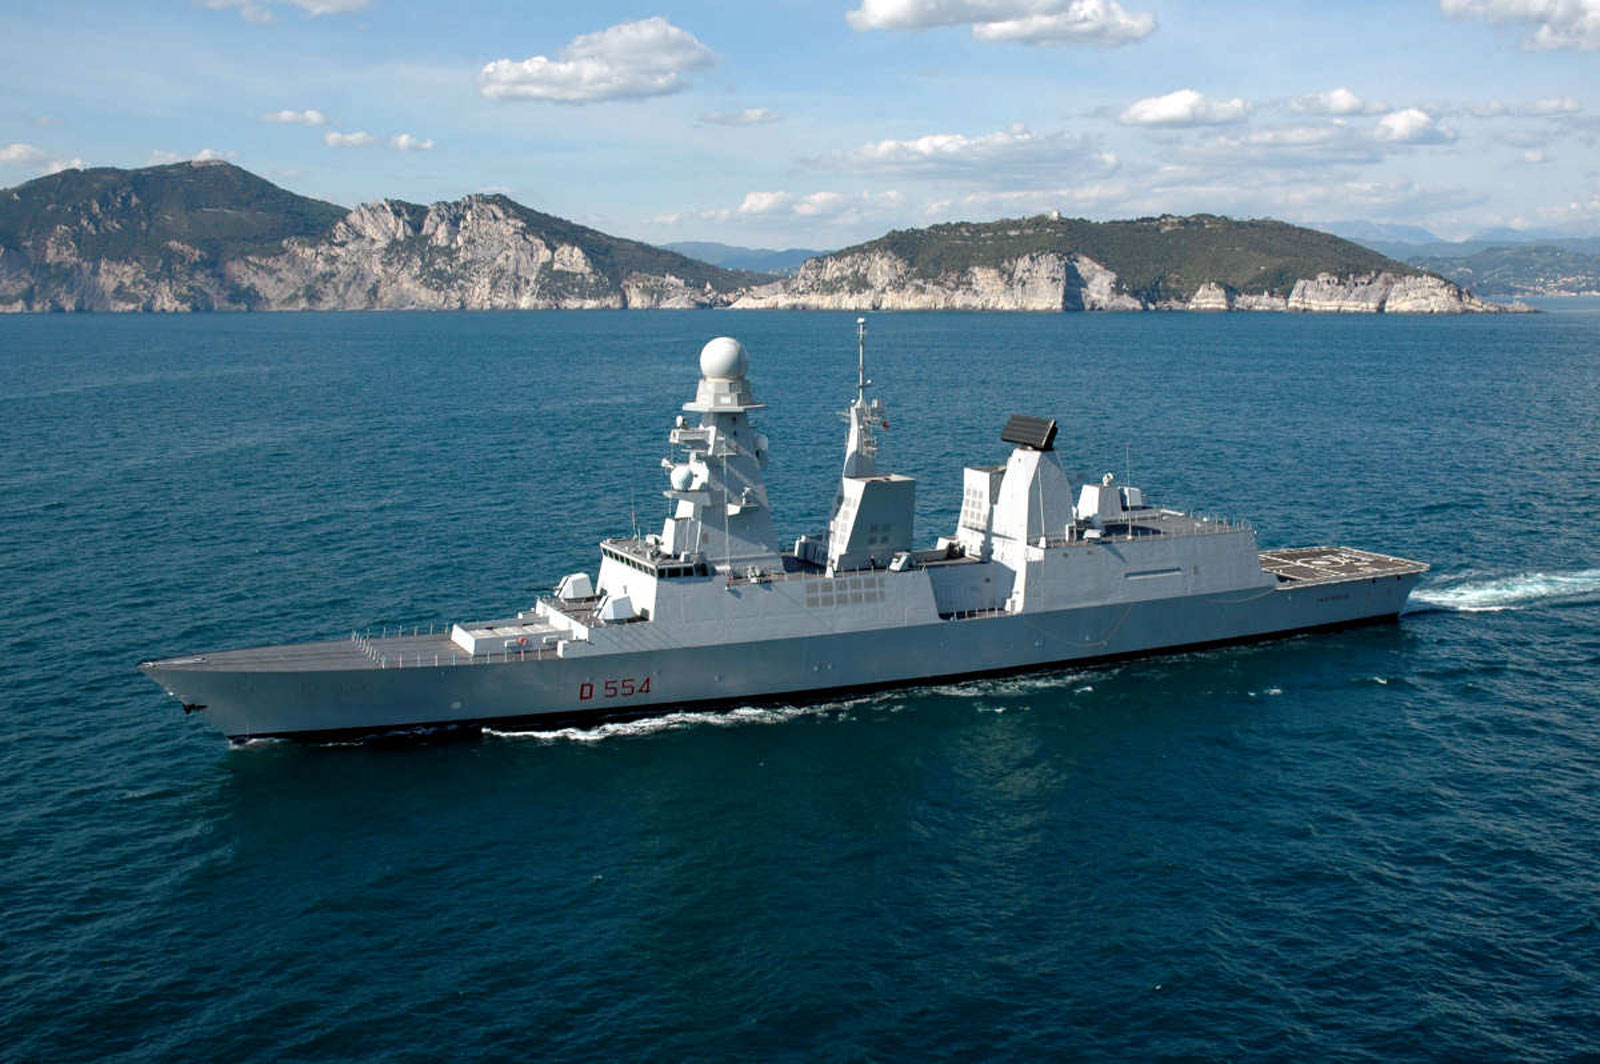 La nave militare Caio Duilio vicino alle coste - marina.difesa.it